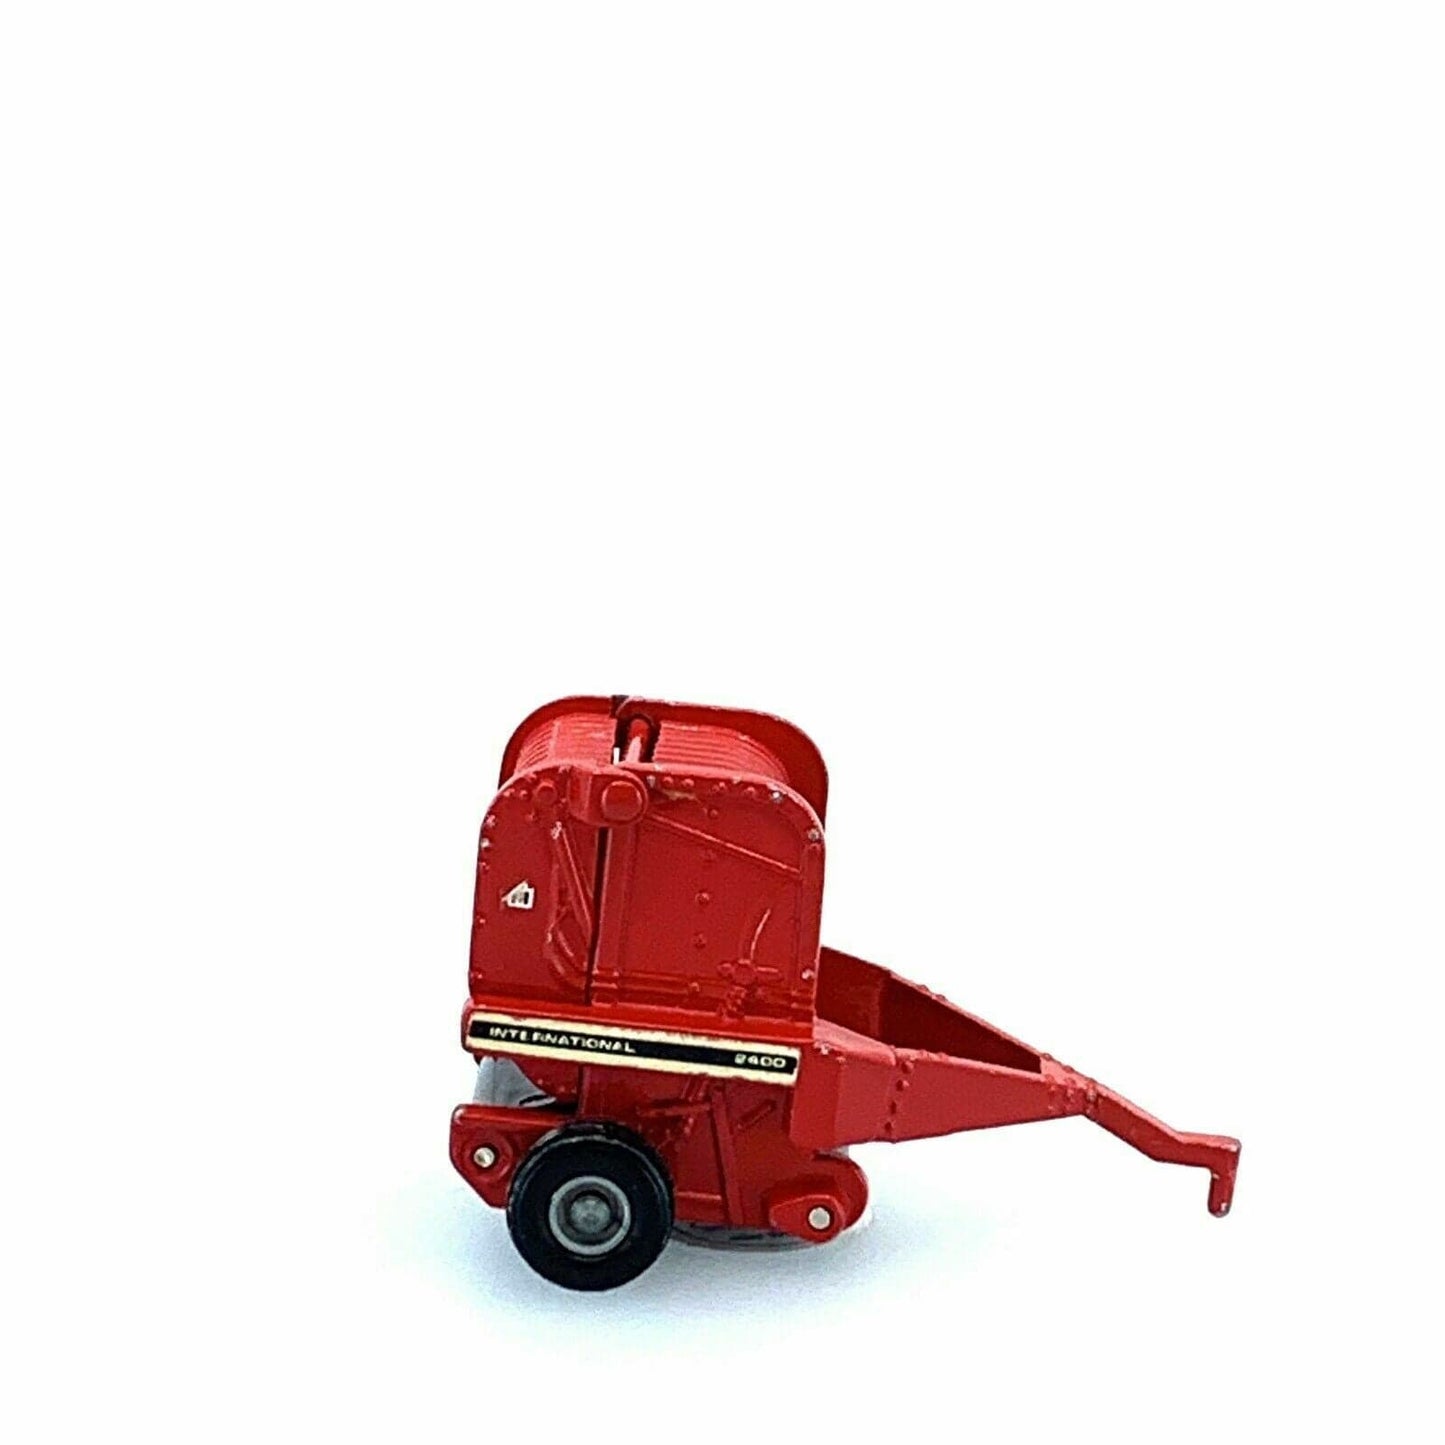 Vintage ERTL International 2400 Round Baler Diecast Toy Red 1:64 Scale